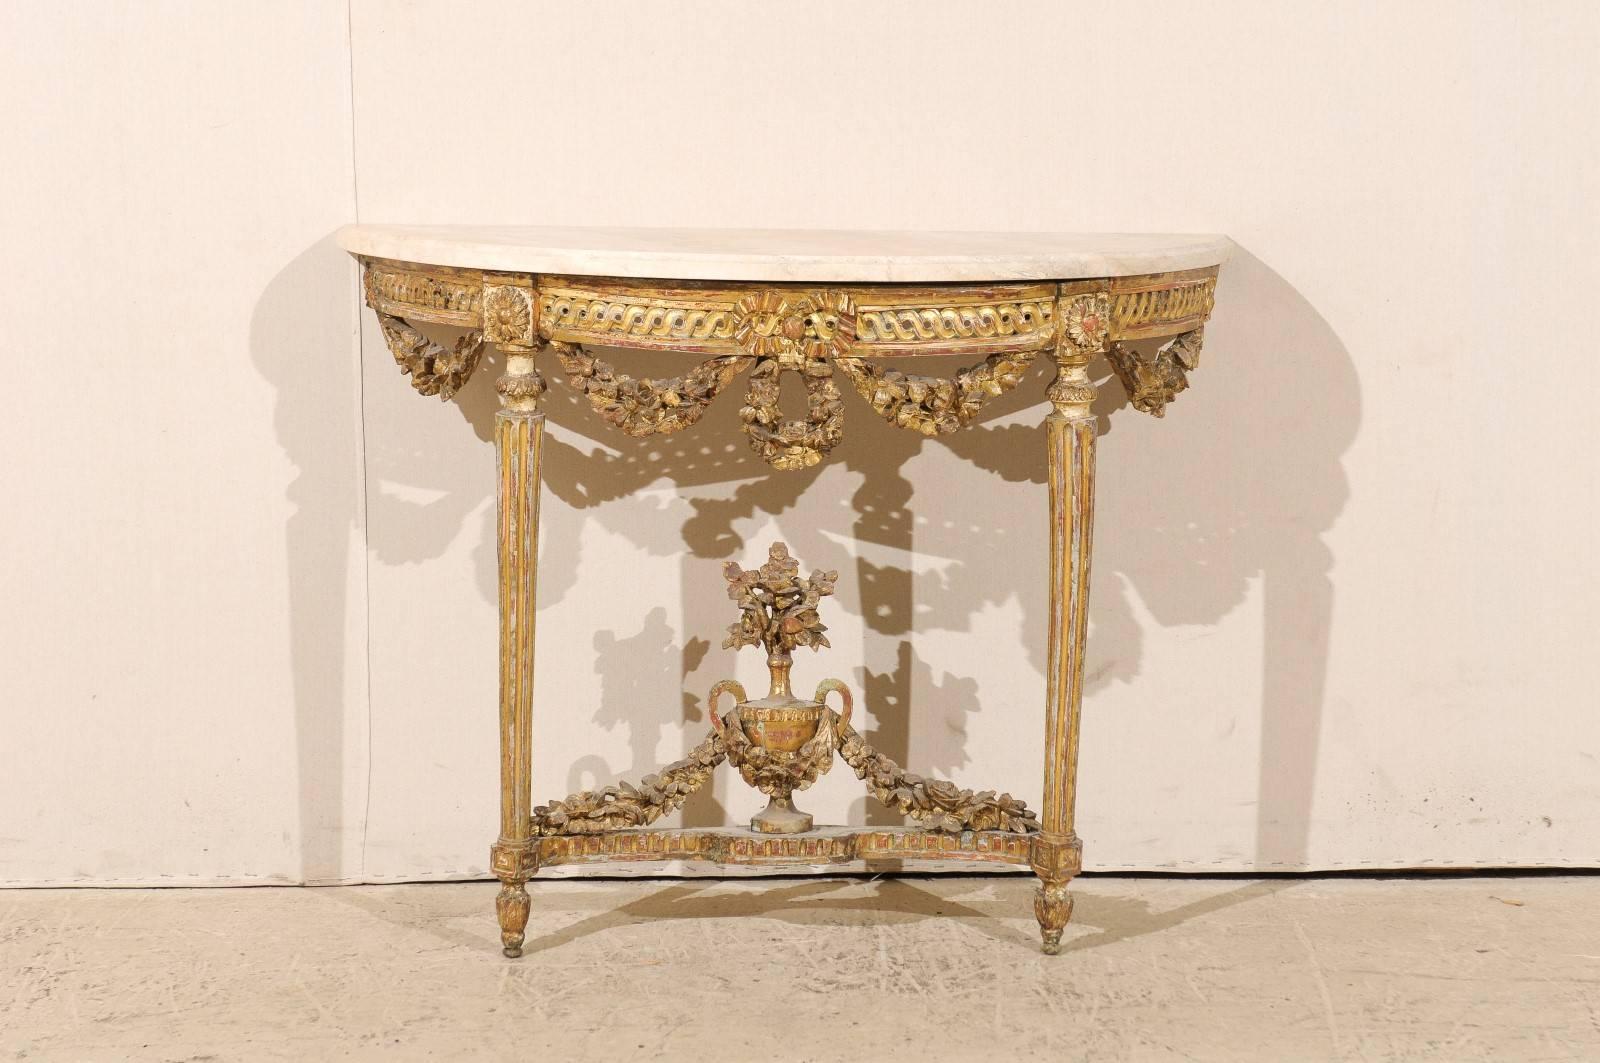 Console italienne du début du 19e siècle à plateau de marbre. Cette belle console en bois doré avec plateau en marbre blanc présente un tablier joliment sculpté avec des guirlandes florales suspendues et un motif guilloché. Les deux pieds, surmontés